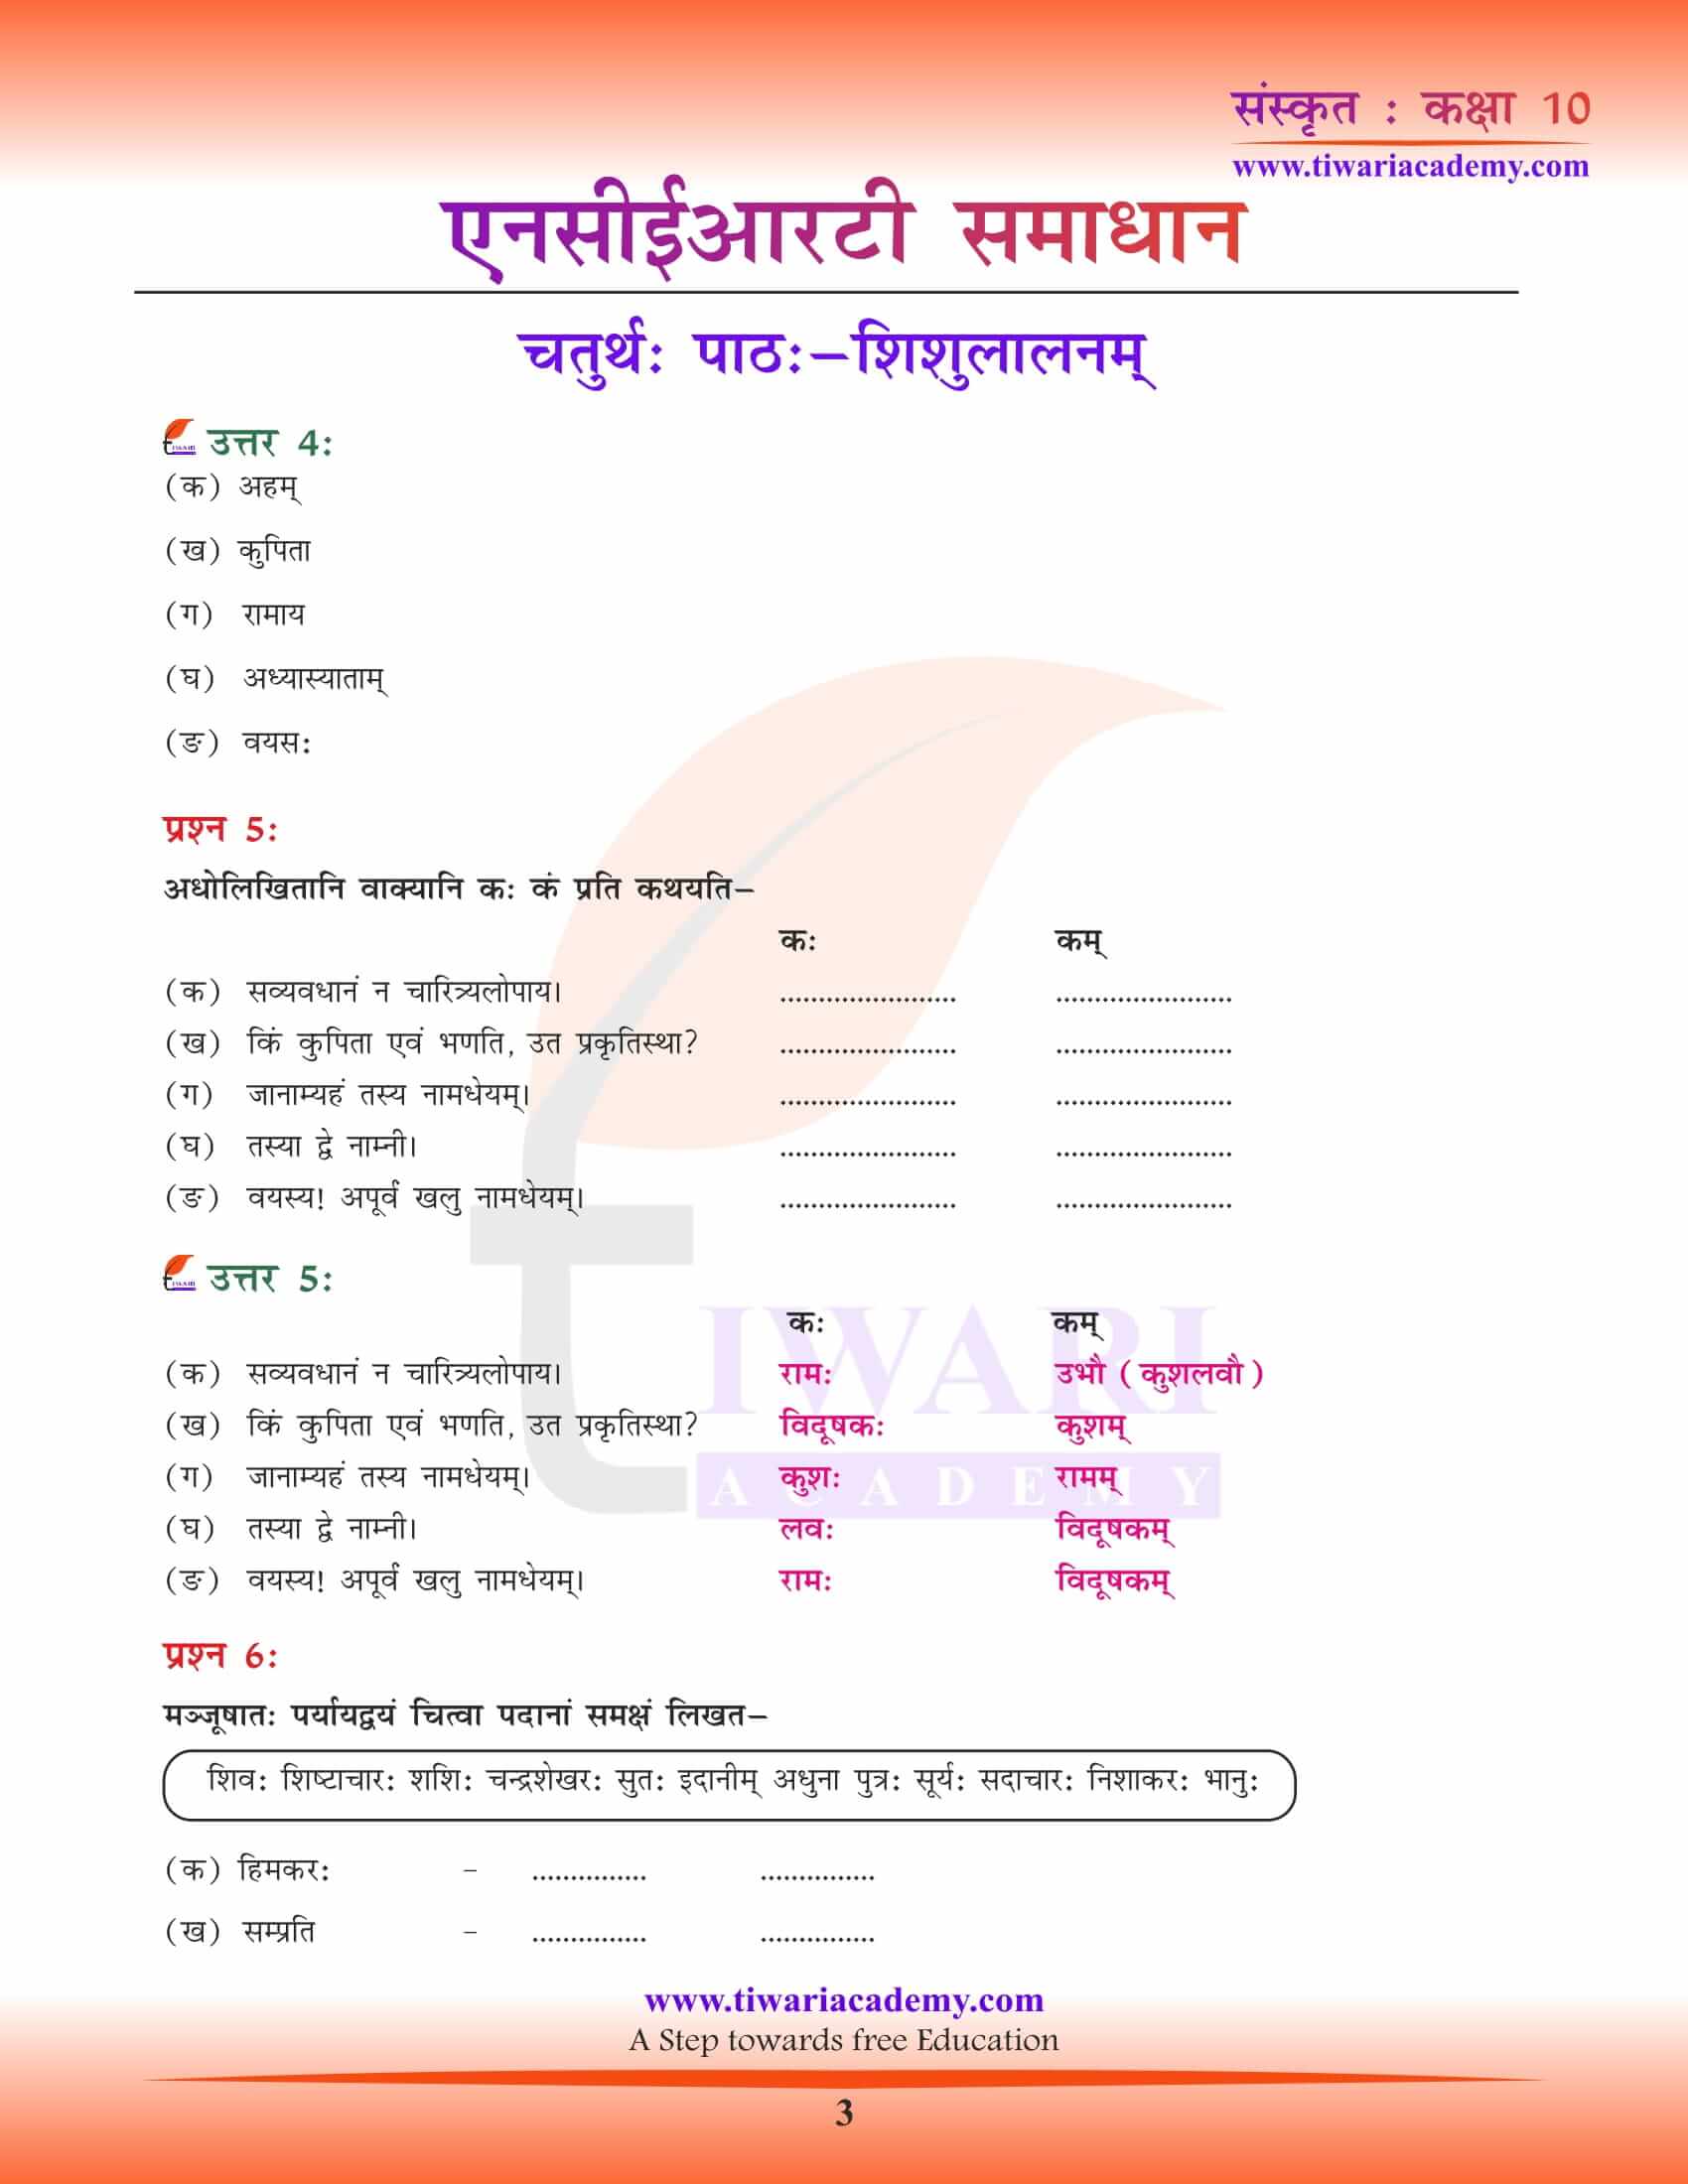 NCERT Solutions for Class 10 Sanskrit Chapter 4 in PDF